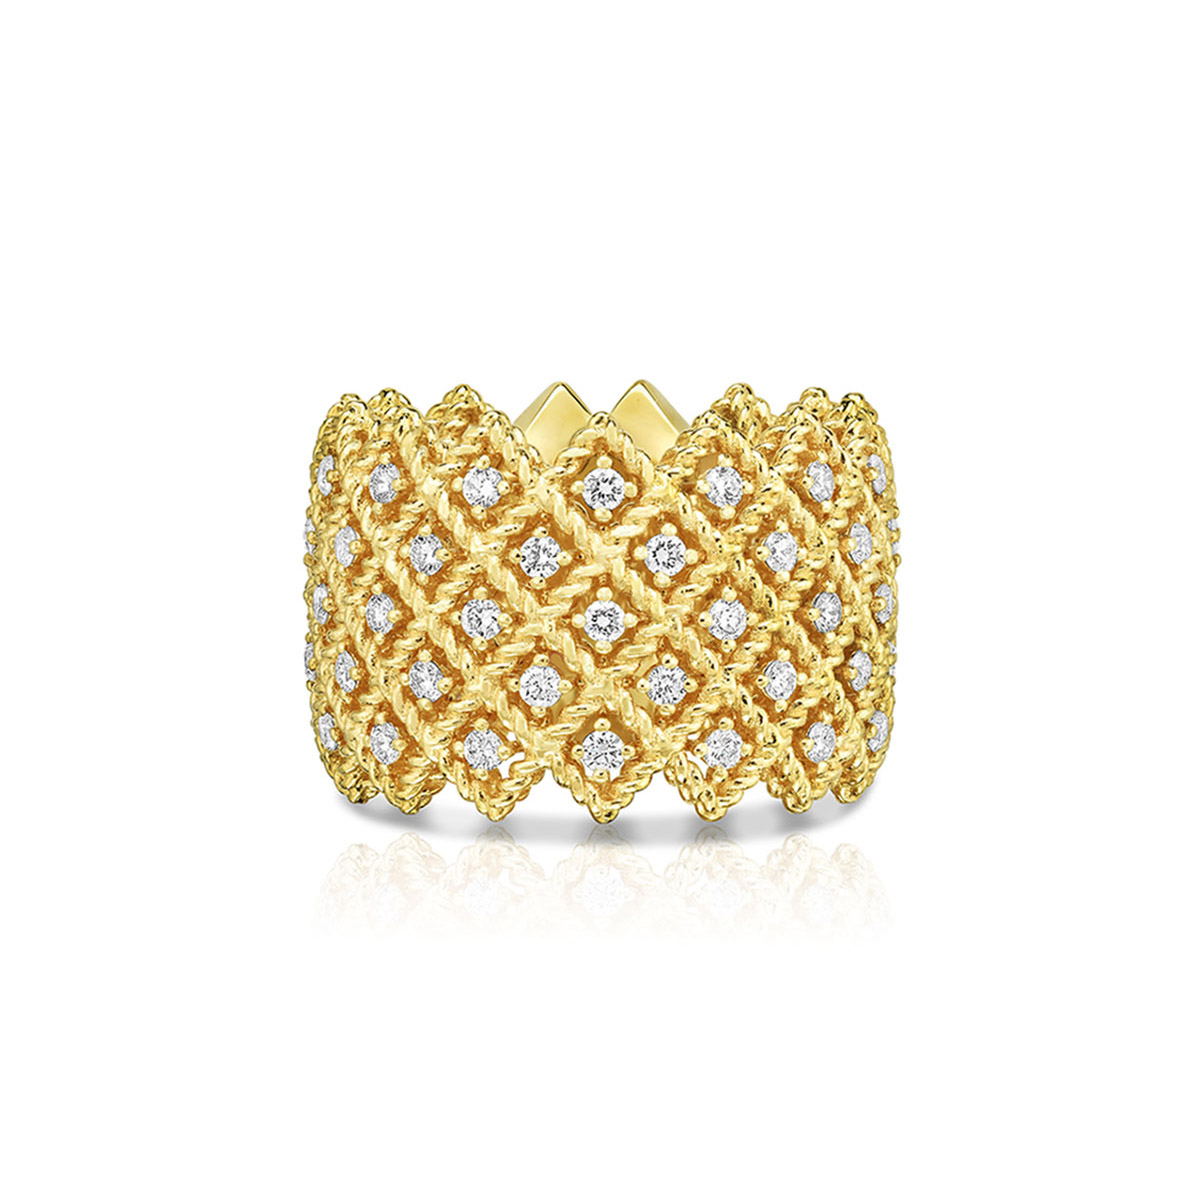 Groothandel bied pasgemaakte OEM/ODM-juweliersware vyf-ry-ring met diamante in 18K geelgoud-ontwerpjuweliersware